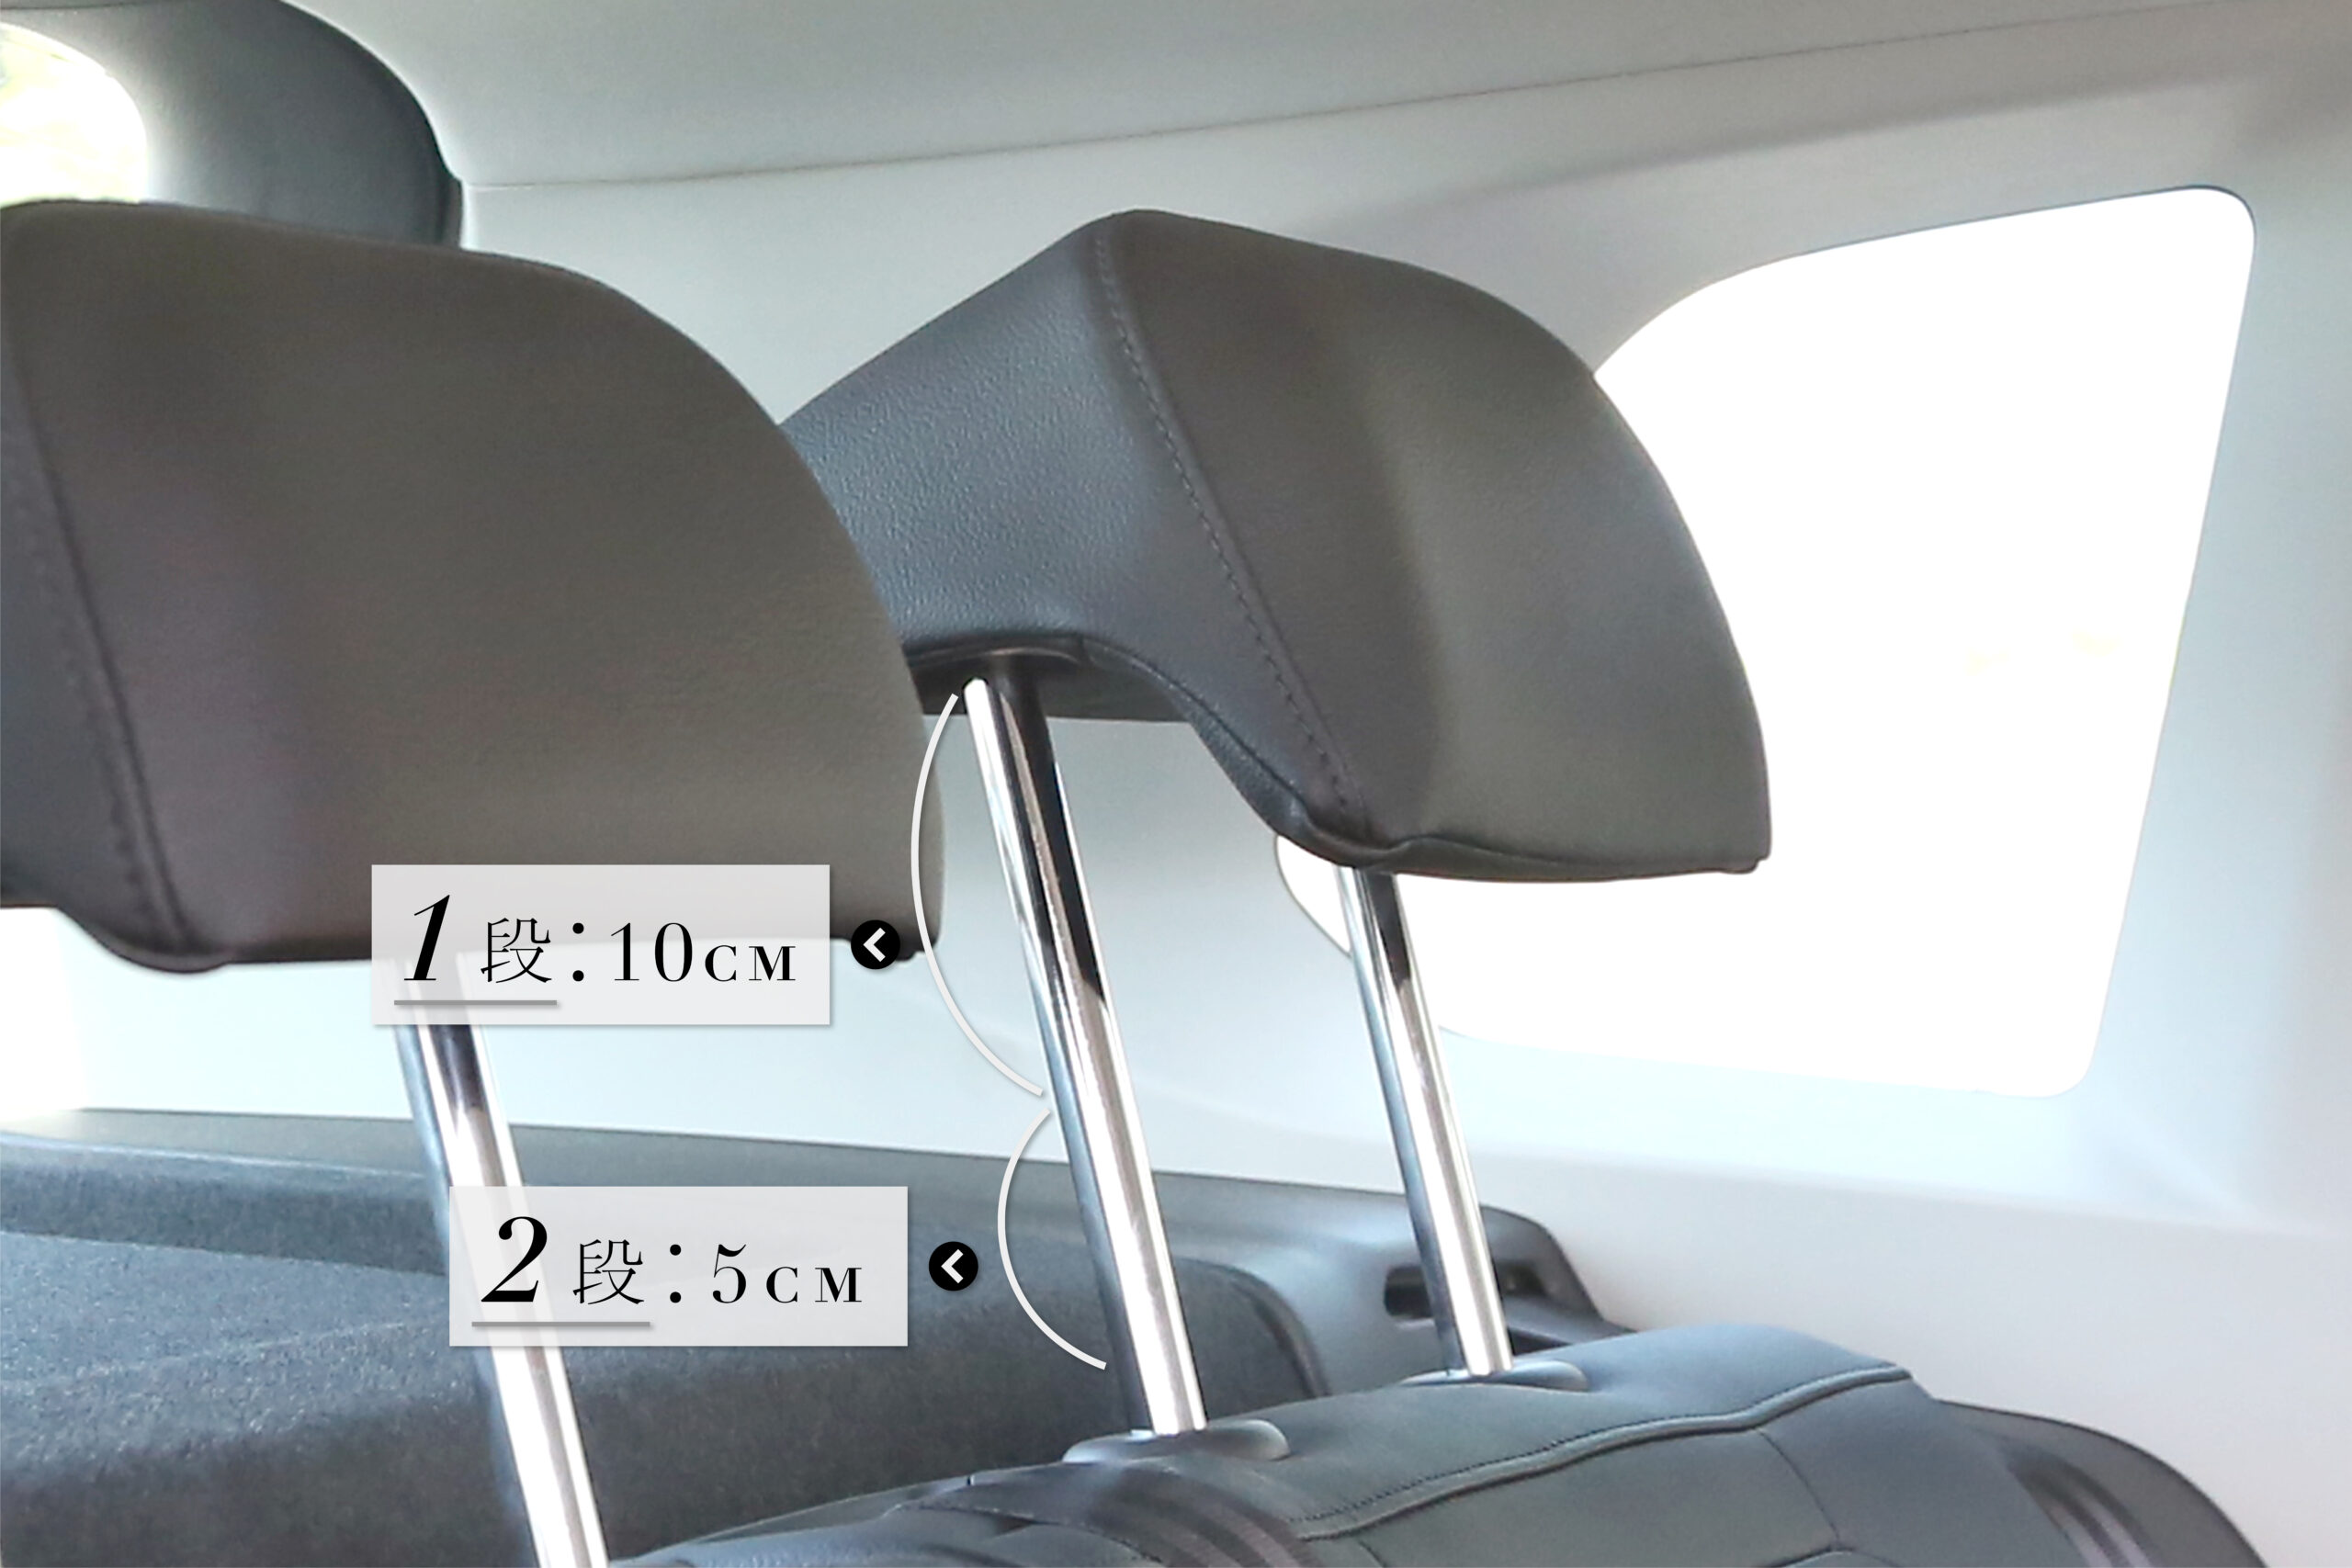 Tiguan安裝Cuore012安全座椅說明